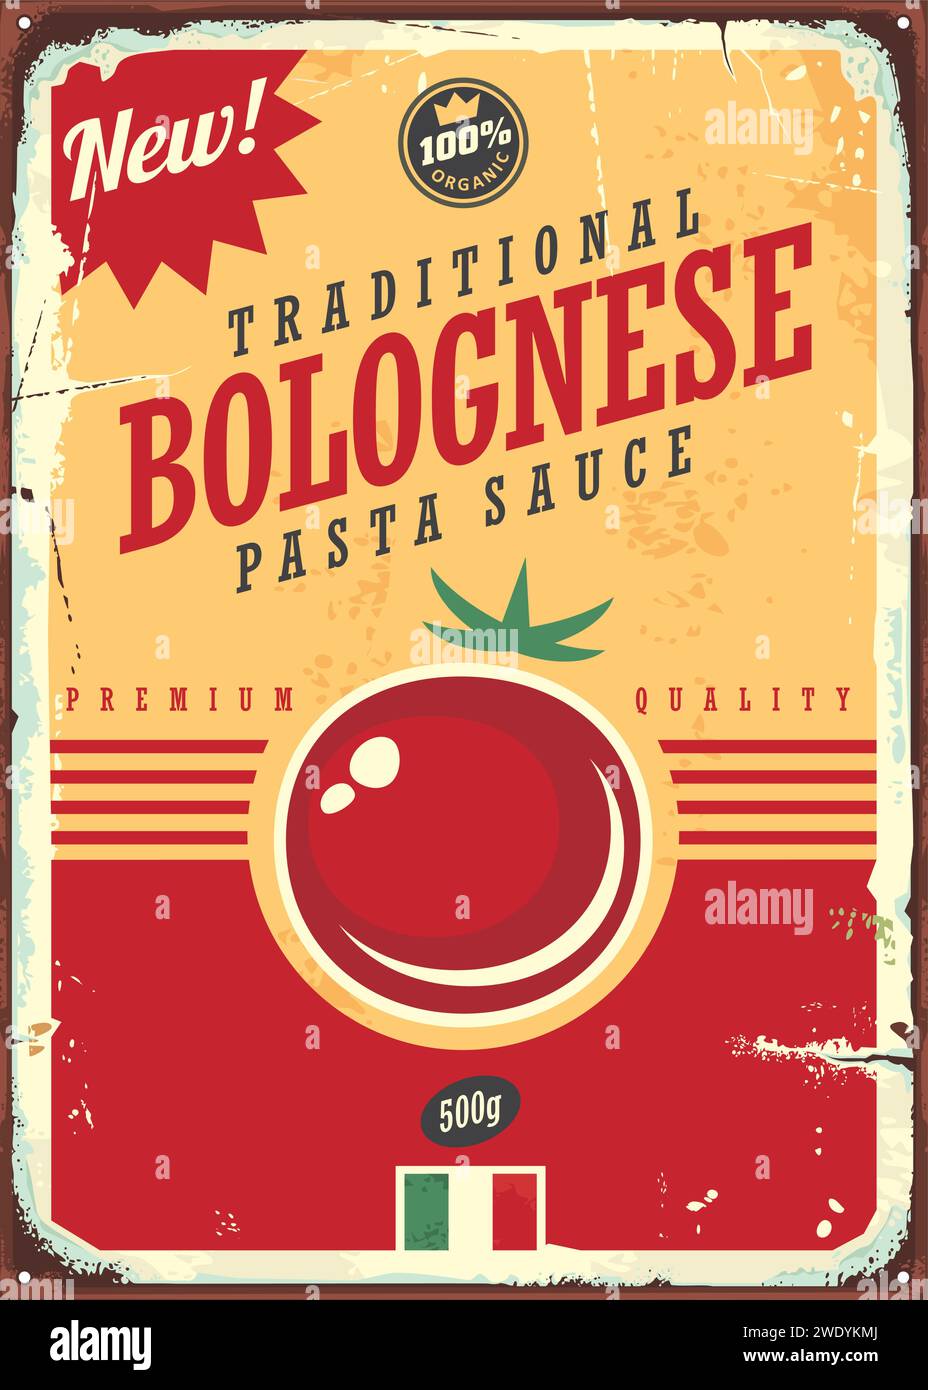 Pubblicità per la salsa di pomodoro alla bolognese. Insegna del cibo vintage. Immagine vettoriale. Illustrazione Vettoriale